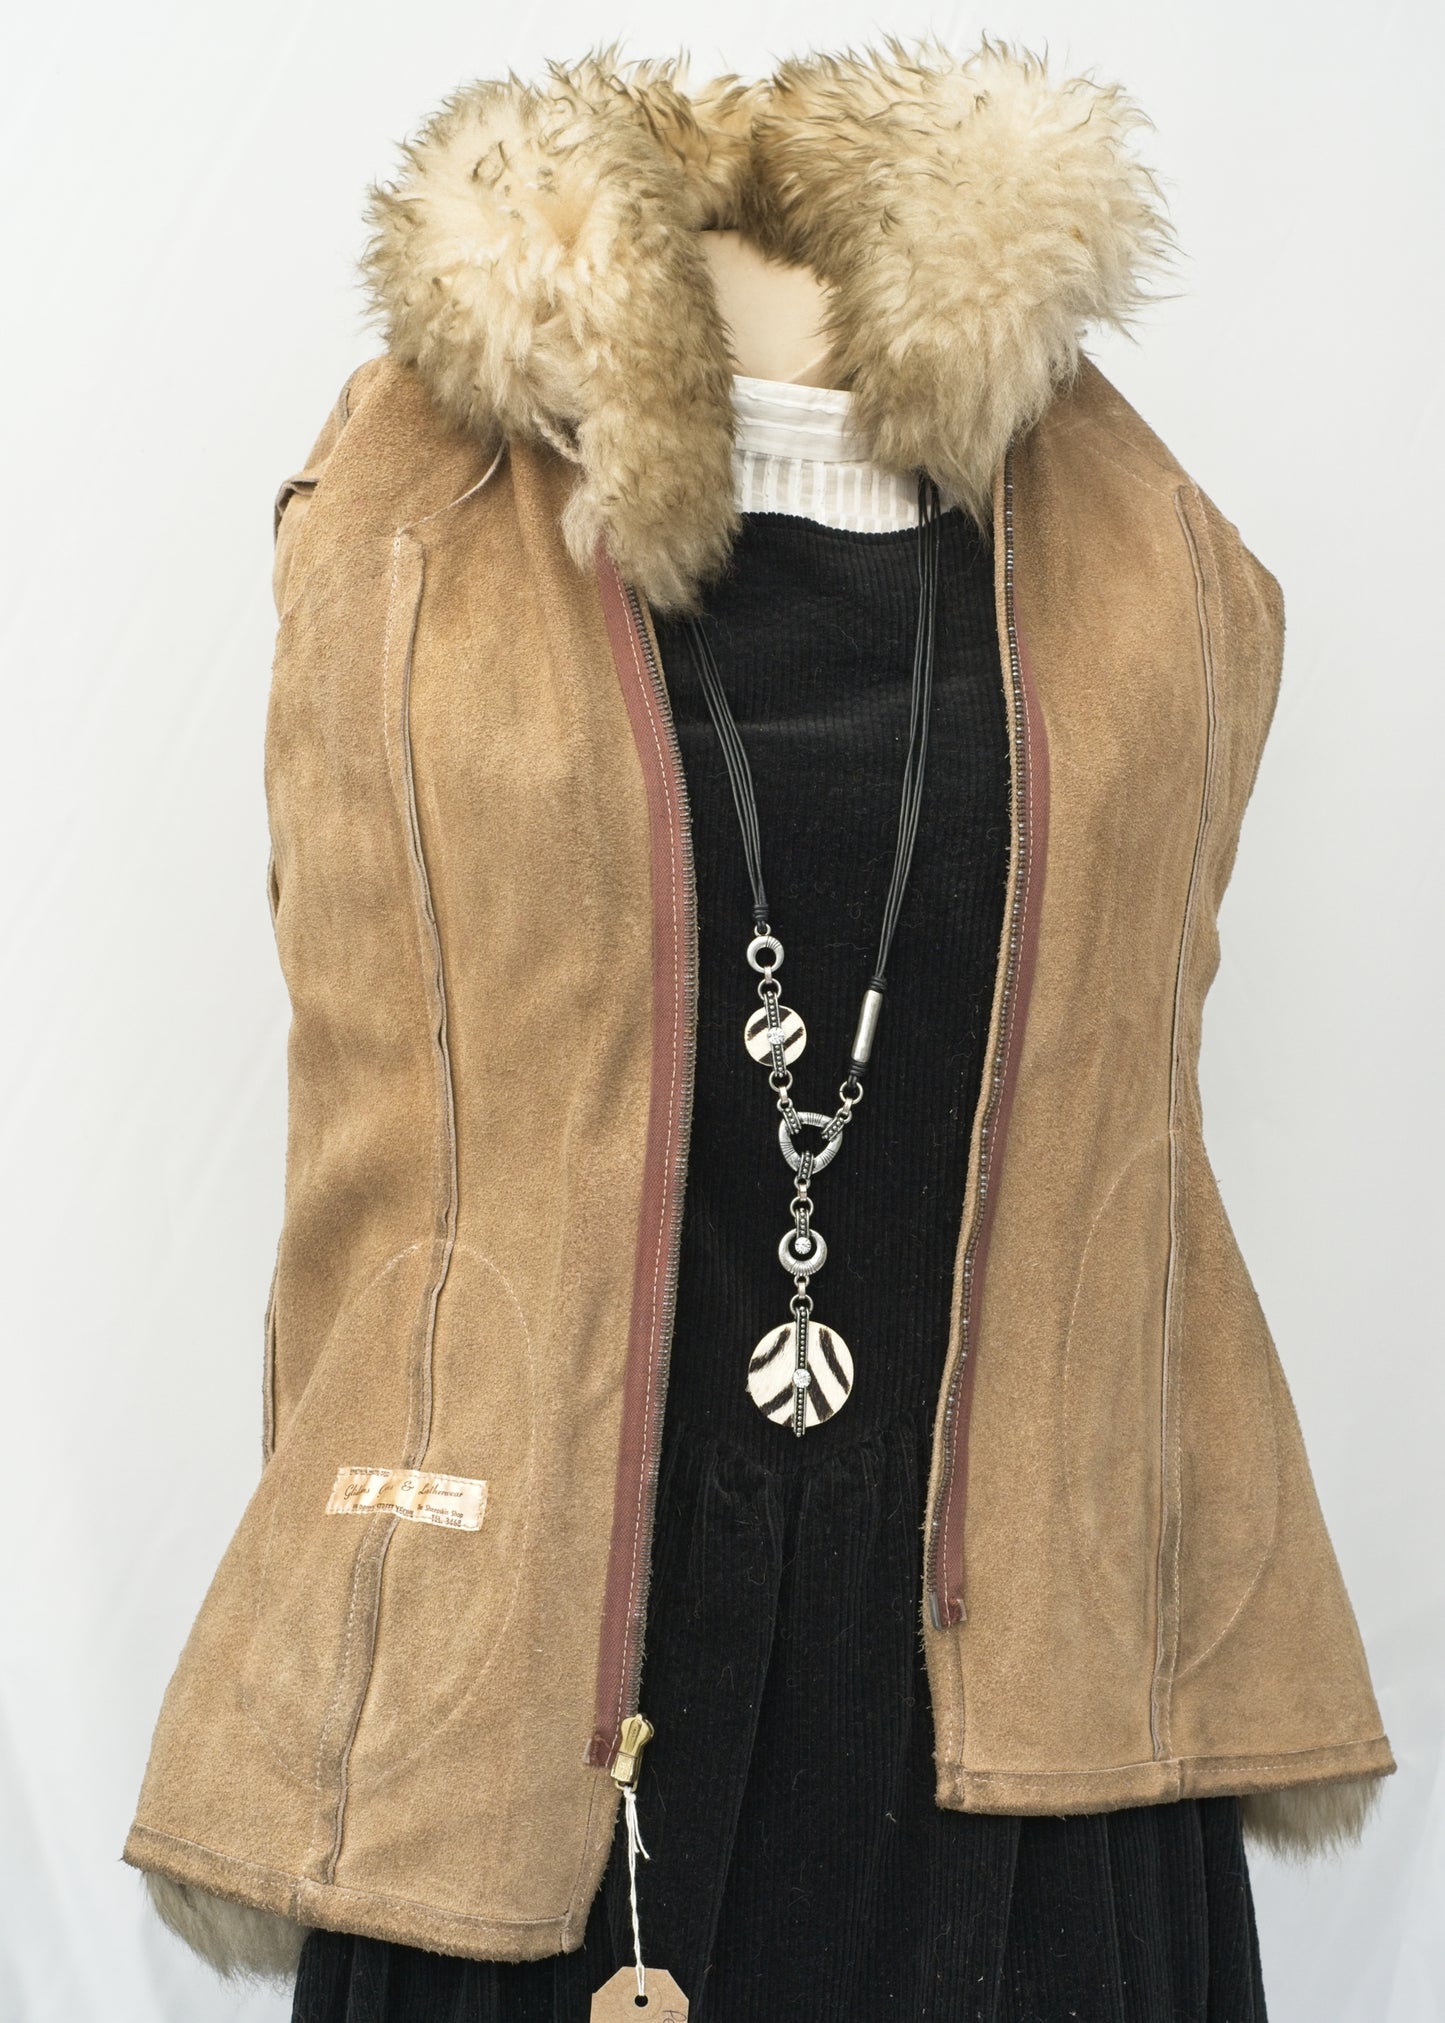 Vintage 70s Beige Suede Penny Lane Jacket • Sheepskin Collar Cuffs